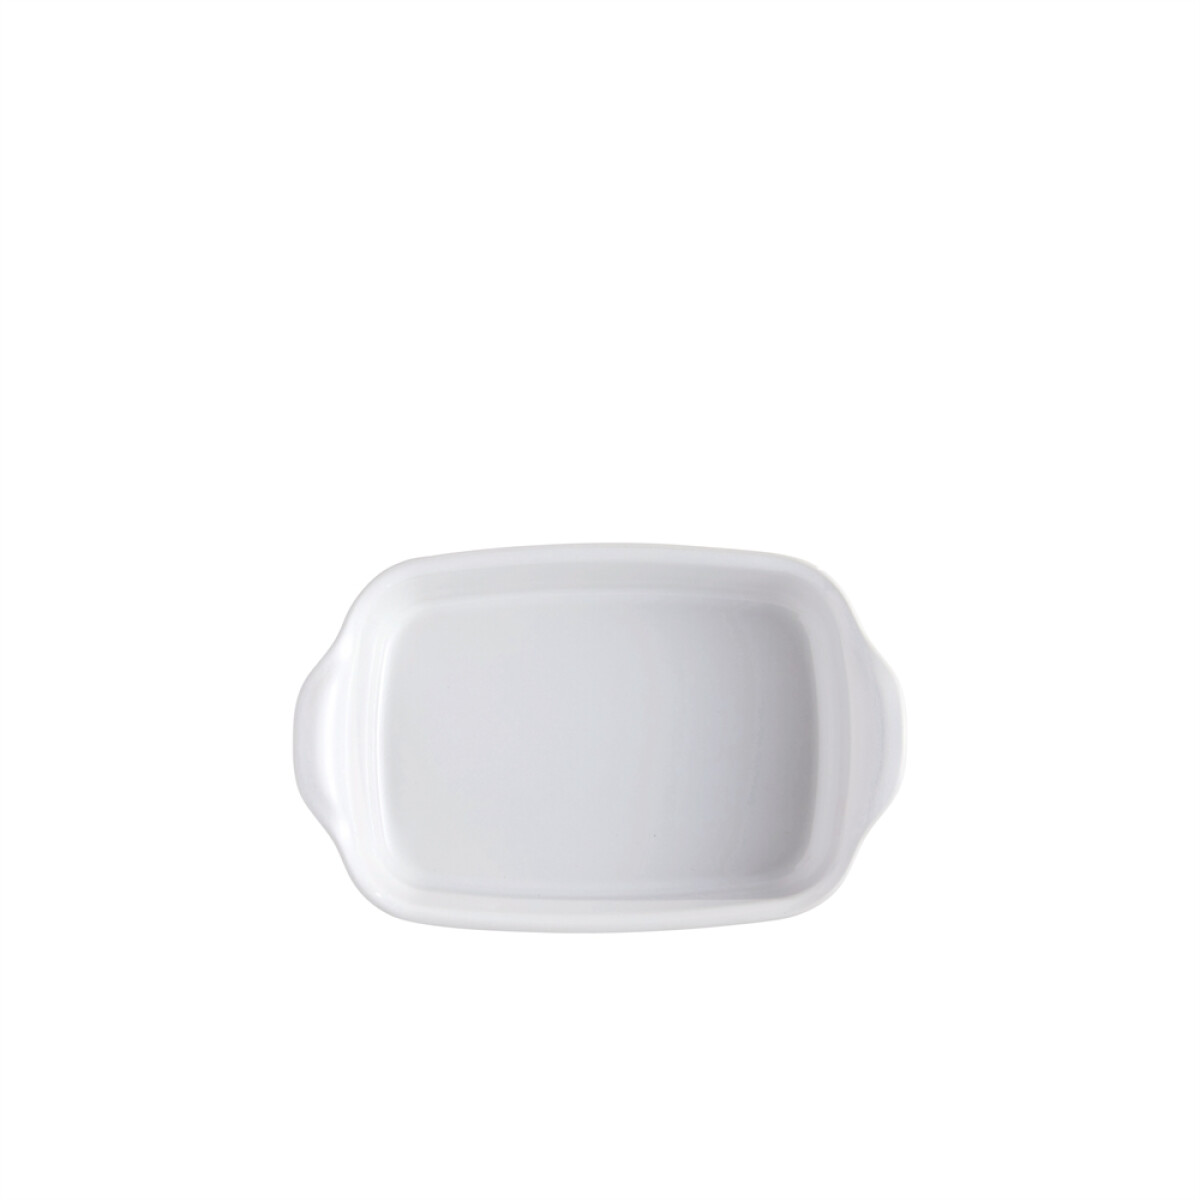 Керамична тава EMILE HENRY INDIVIDUAL OVEN DISH - 22х15 см, цвят бял